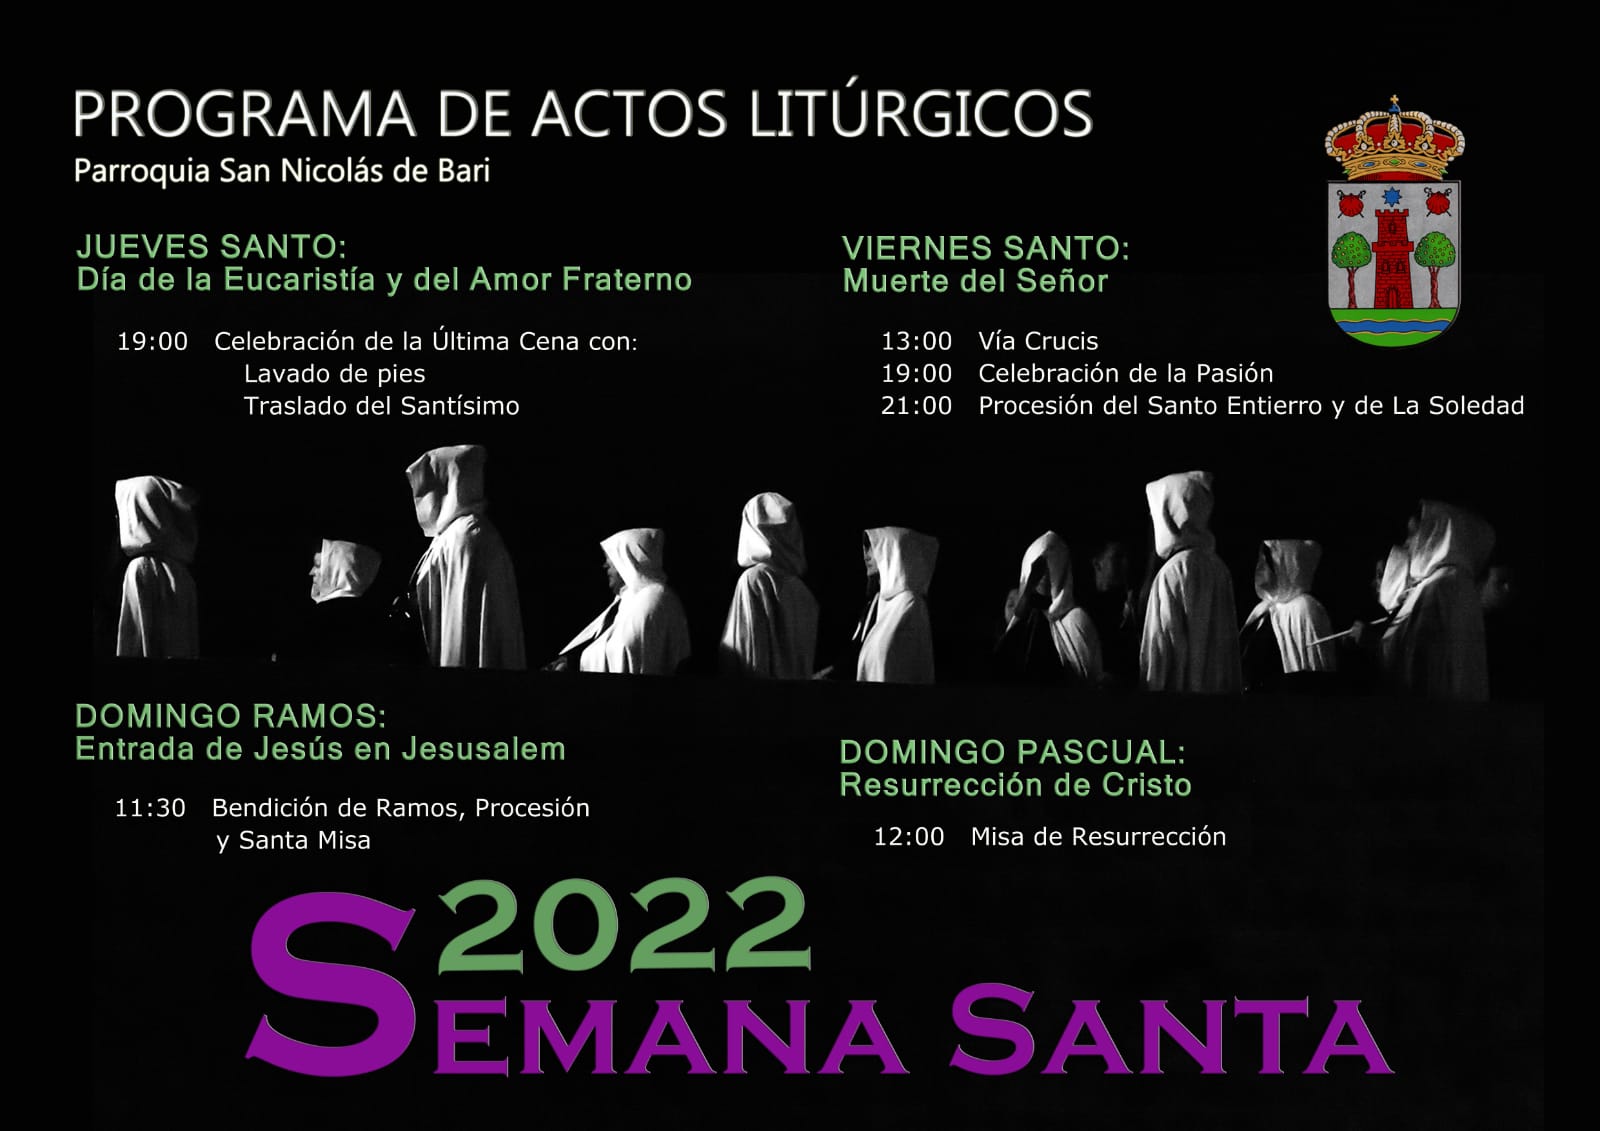 PROGRAMA DE ACTOS LITÚRGICOS SEMANA SANTA 2022